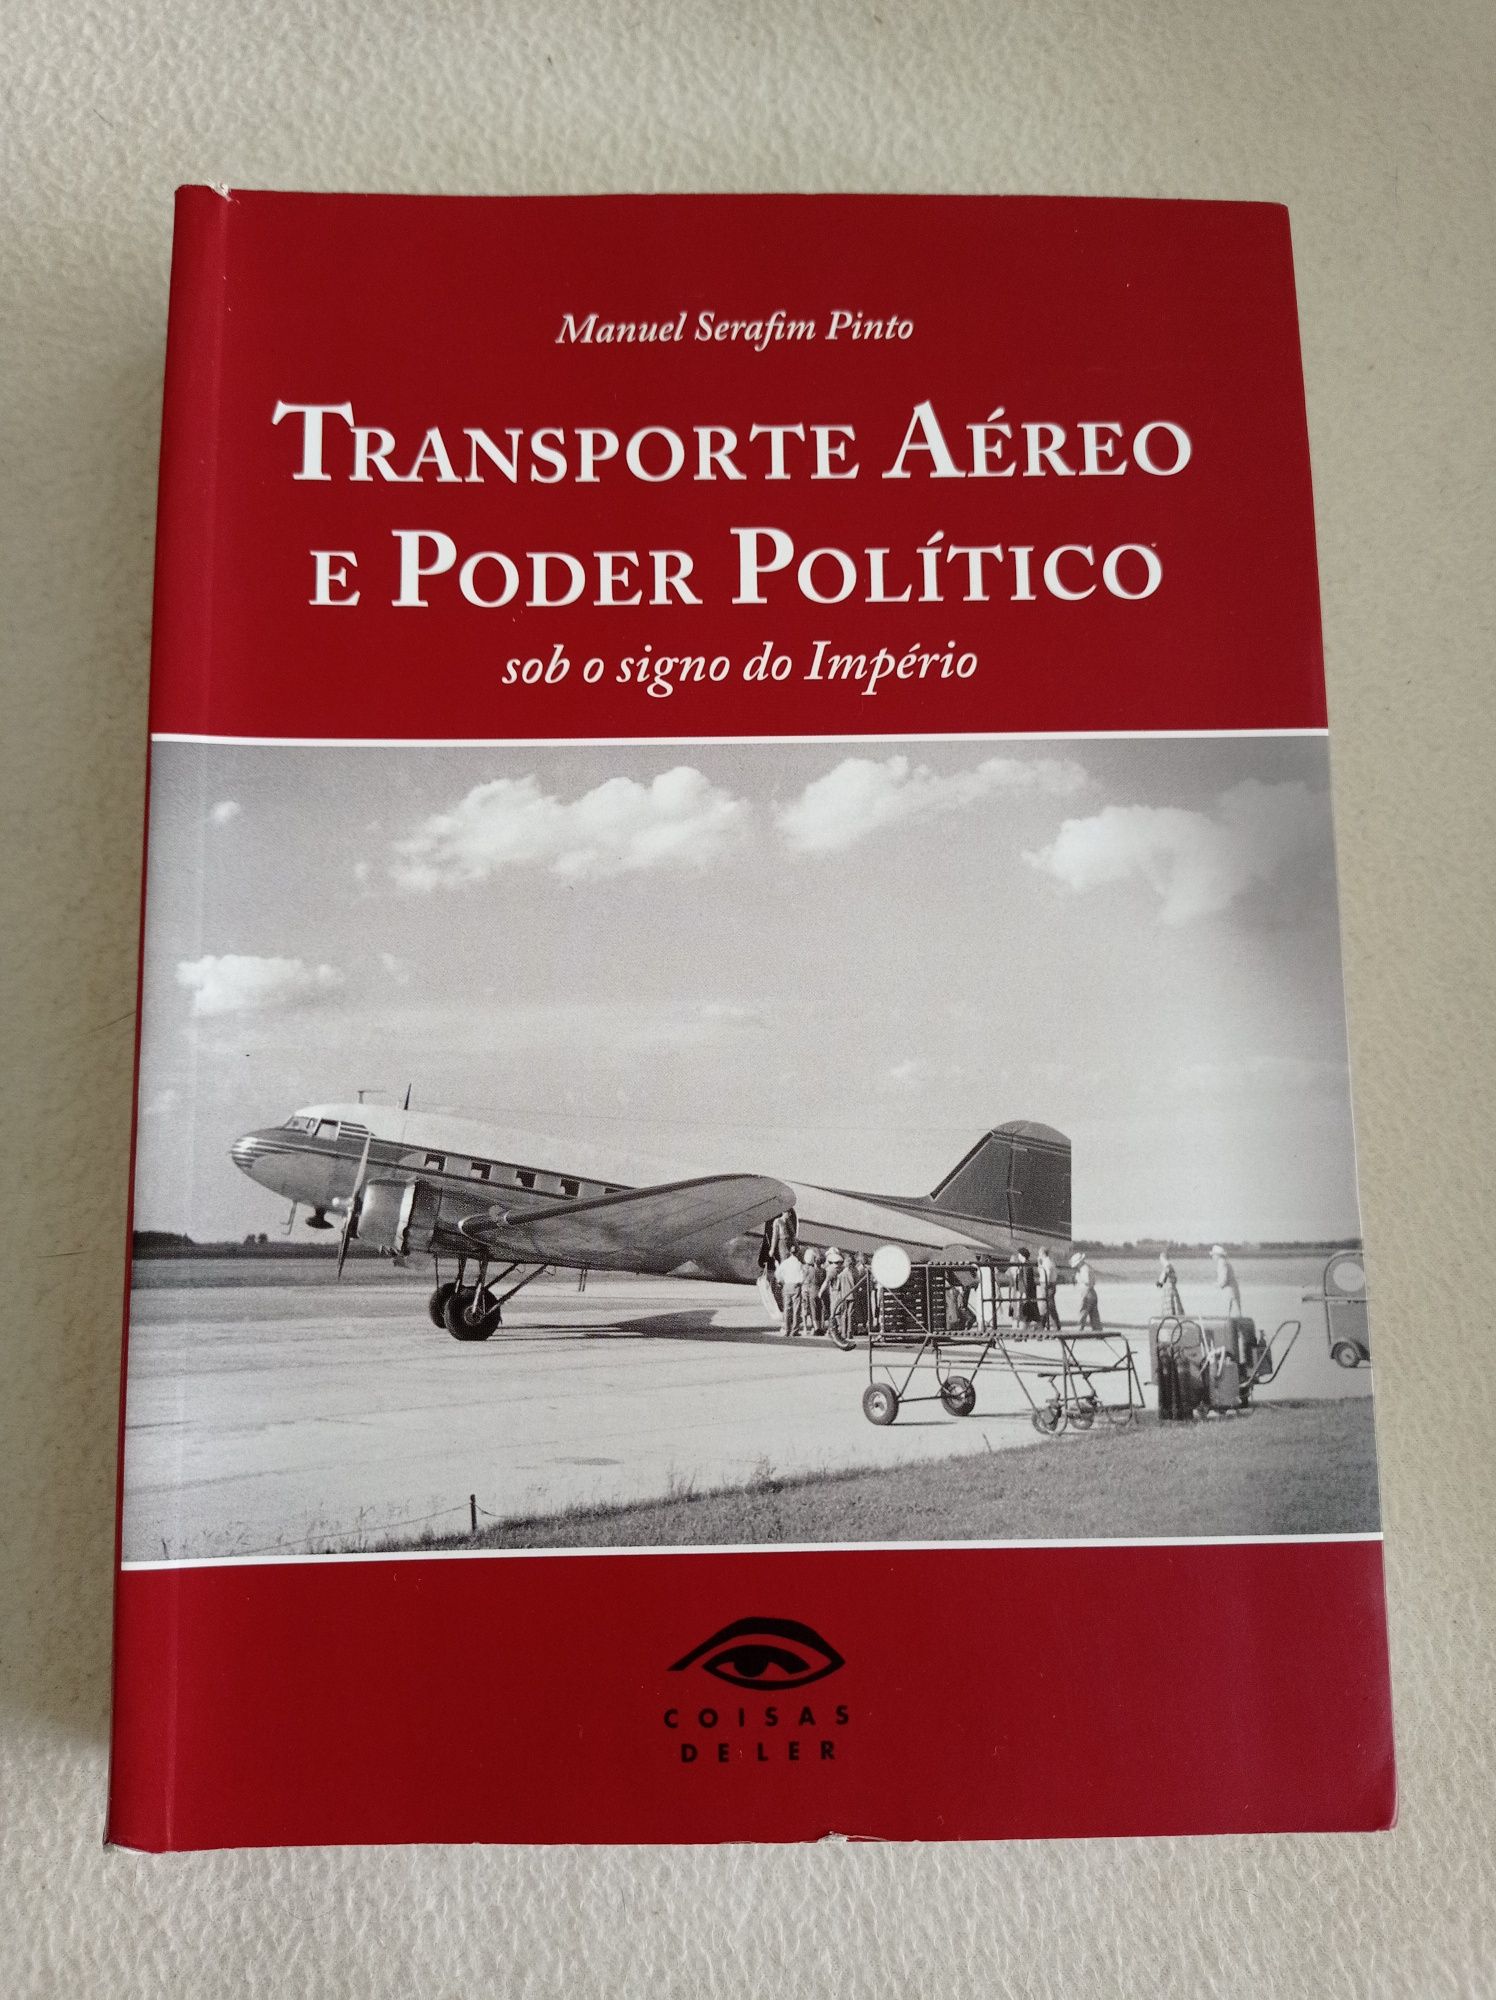 Transporte aéreo e poder político - Manuel Serafim Pinto